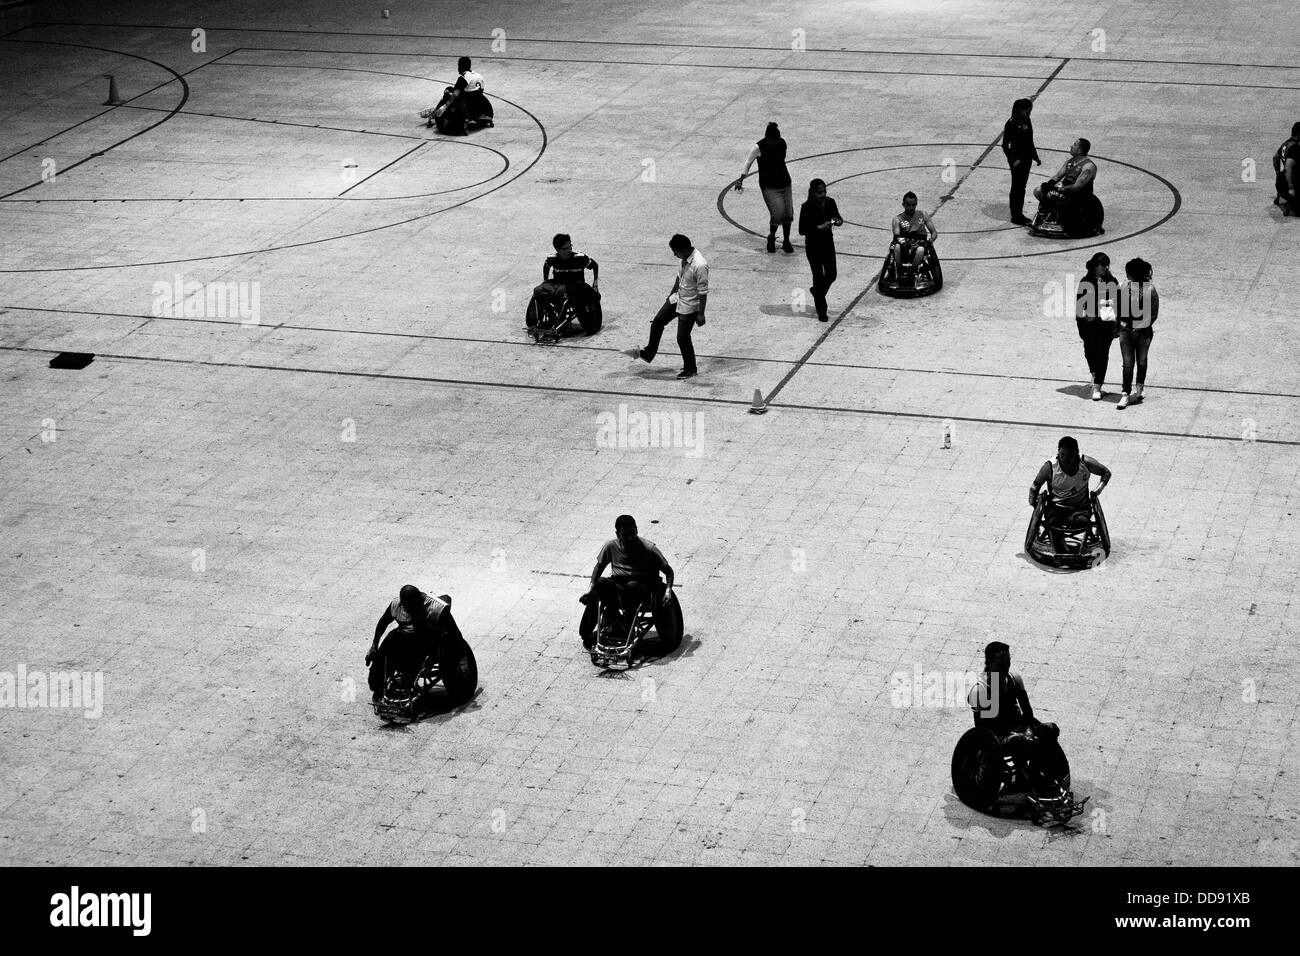 Les athlètes handicapés colombien quitte le terrain après un match d'entraînement de rugby en fauteuil roulant à l'aréna à Bogota, Colombie. Banque D'Images